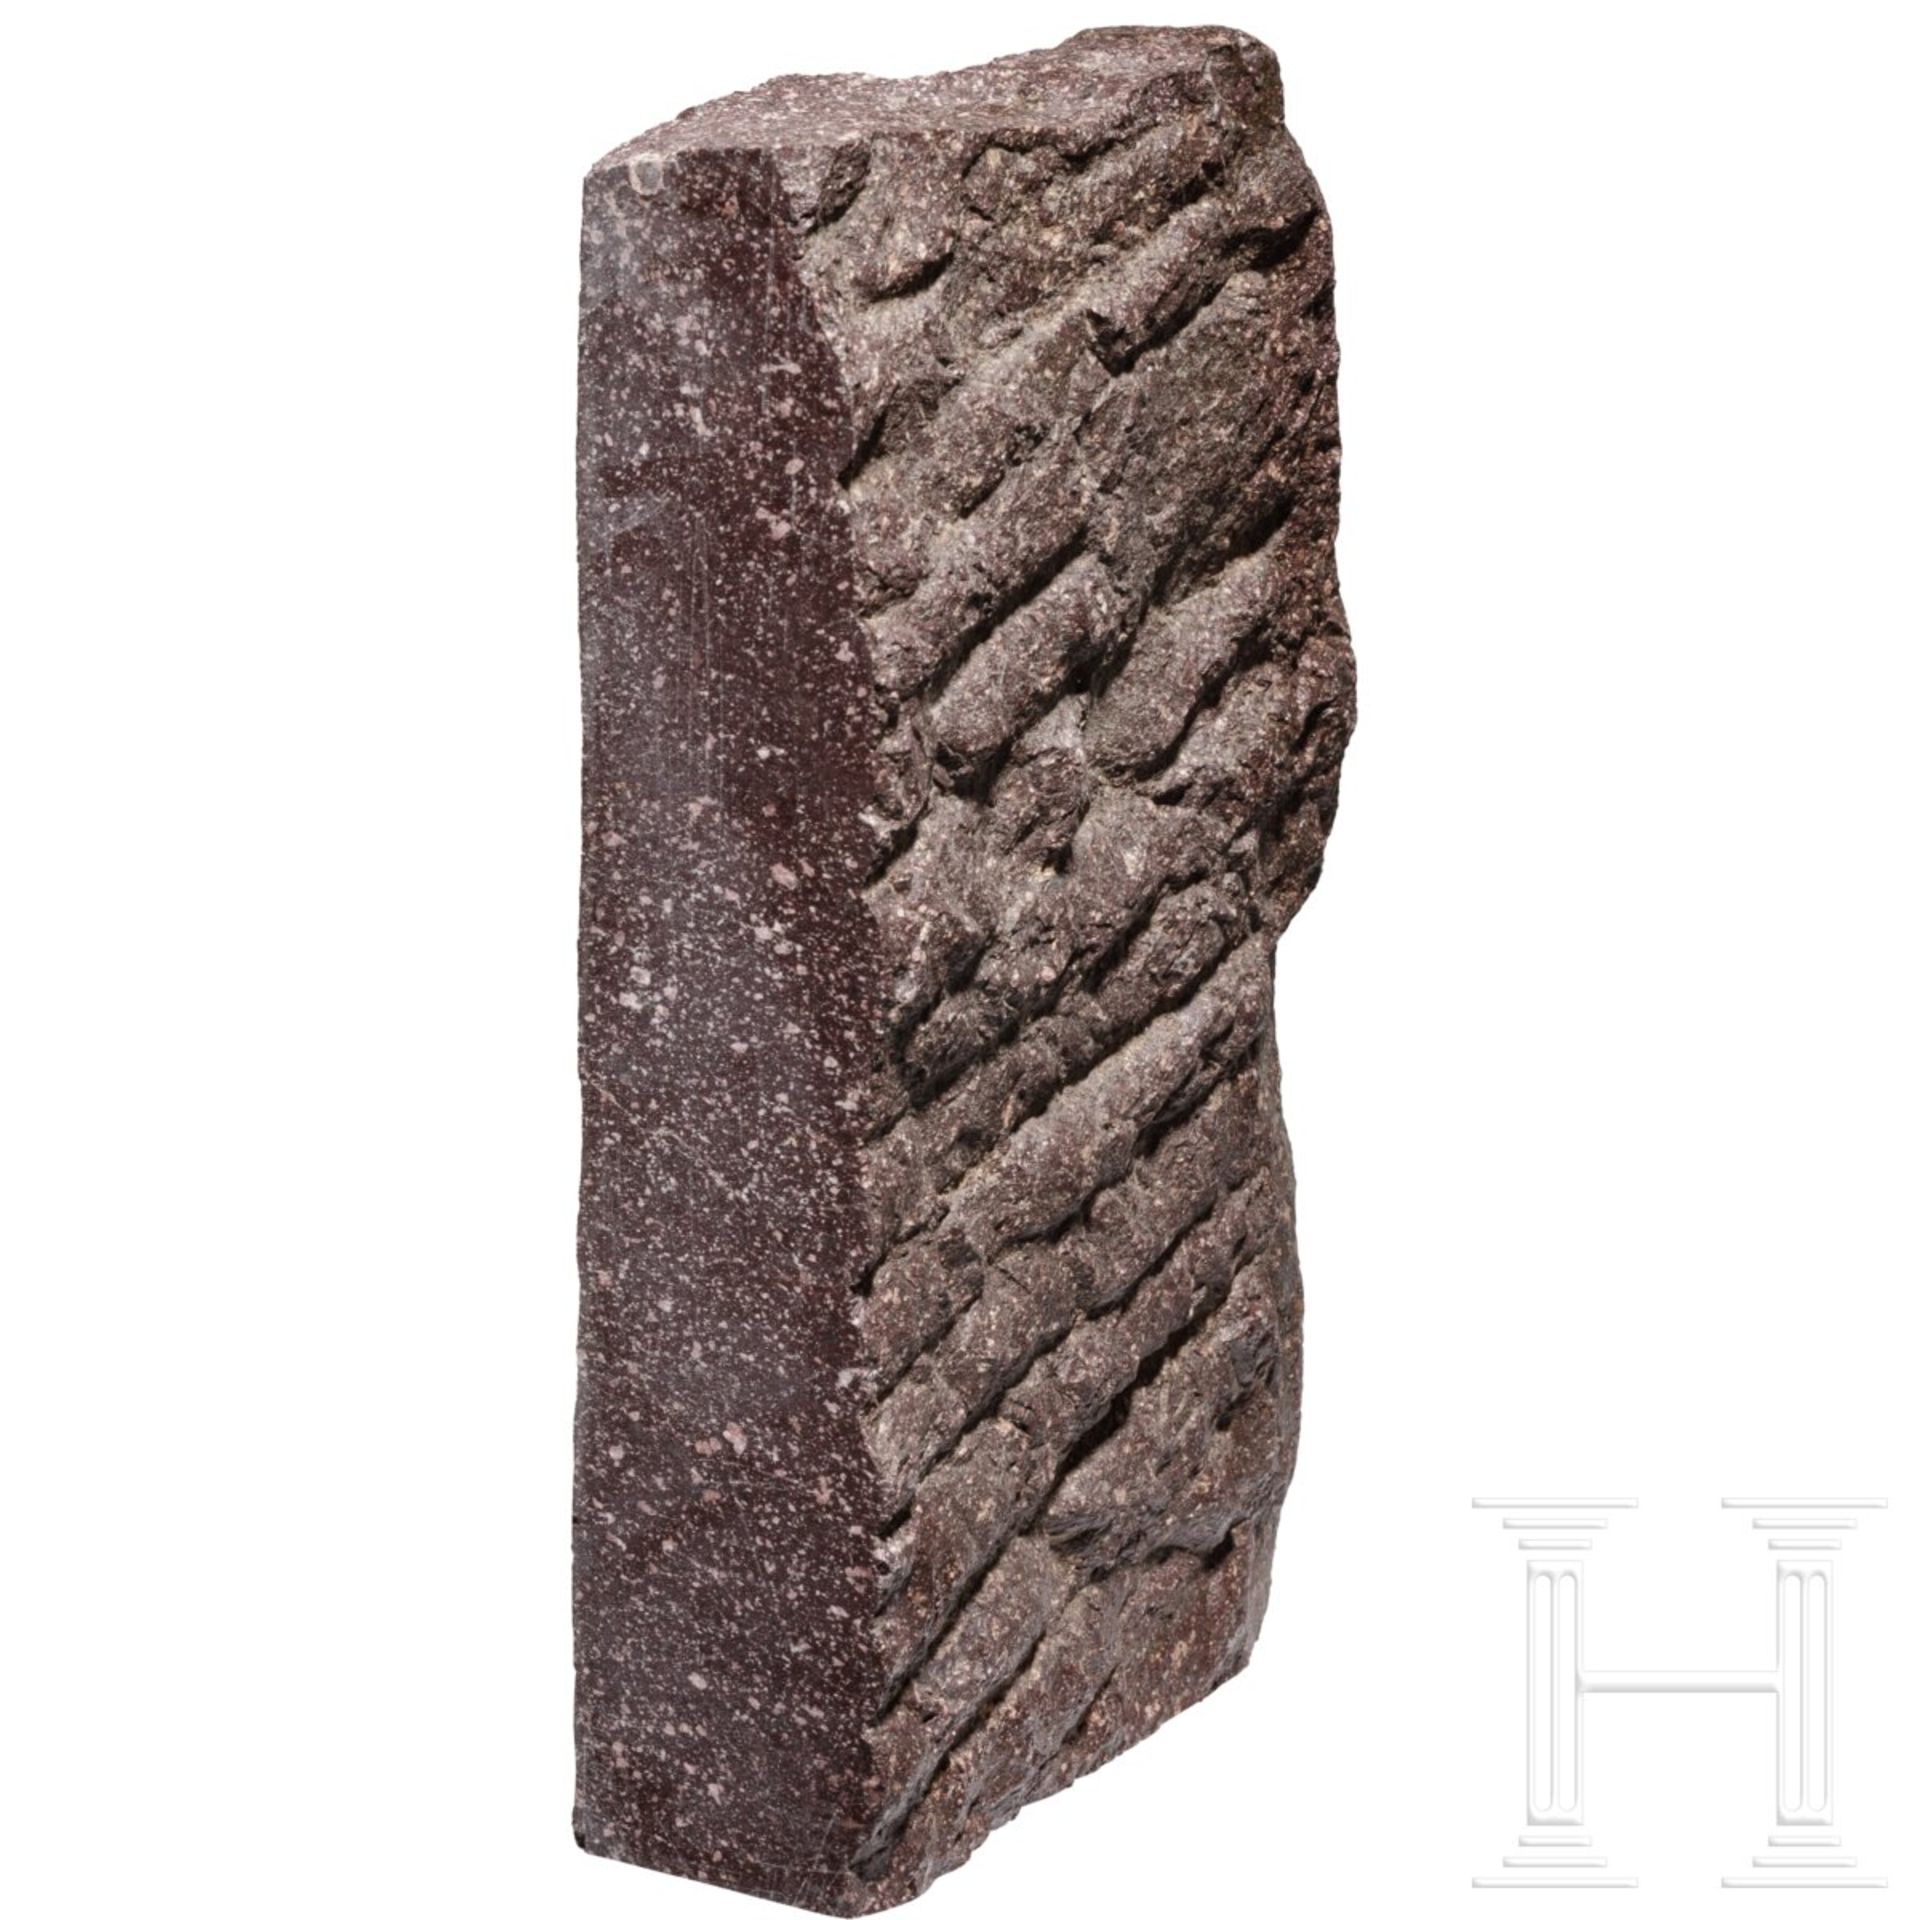 Porphyr-Fragment eines Sockels oder Gebäudes, römisch, 1. - 3. Jhdt. - Image 3 of 5